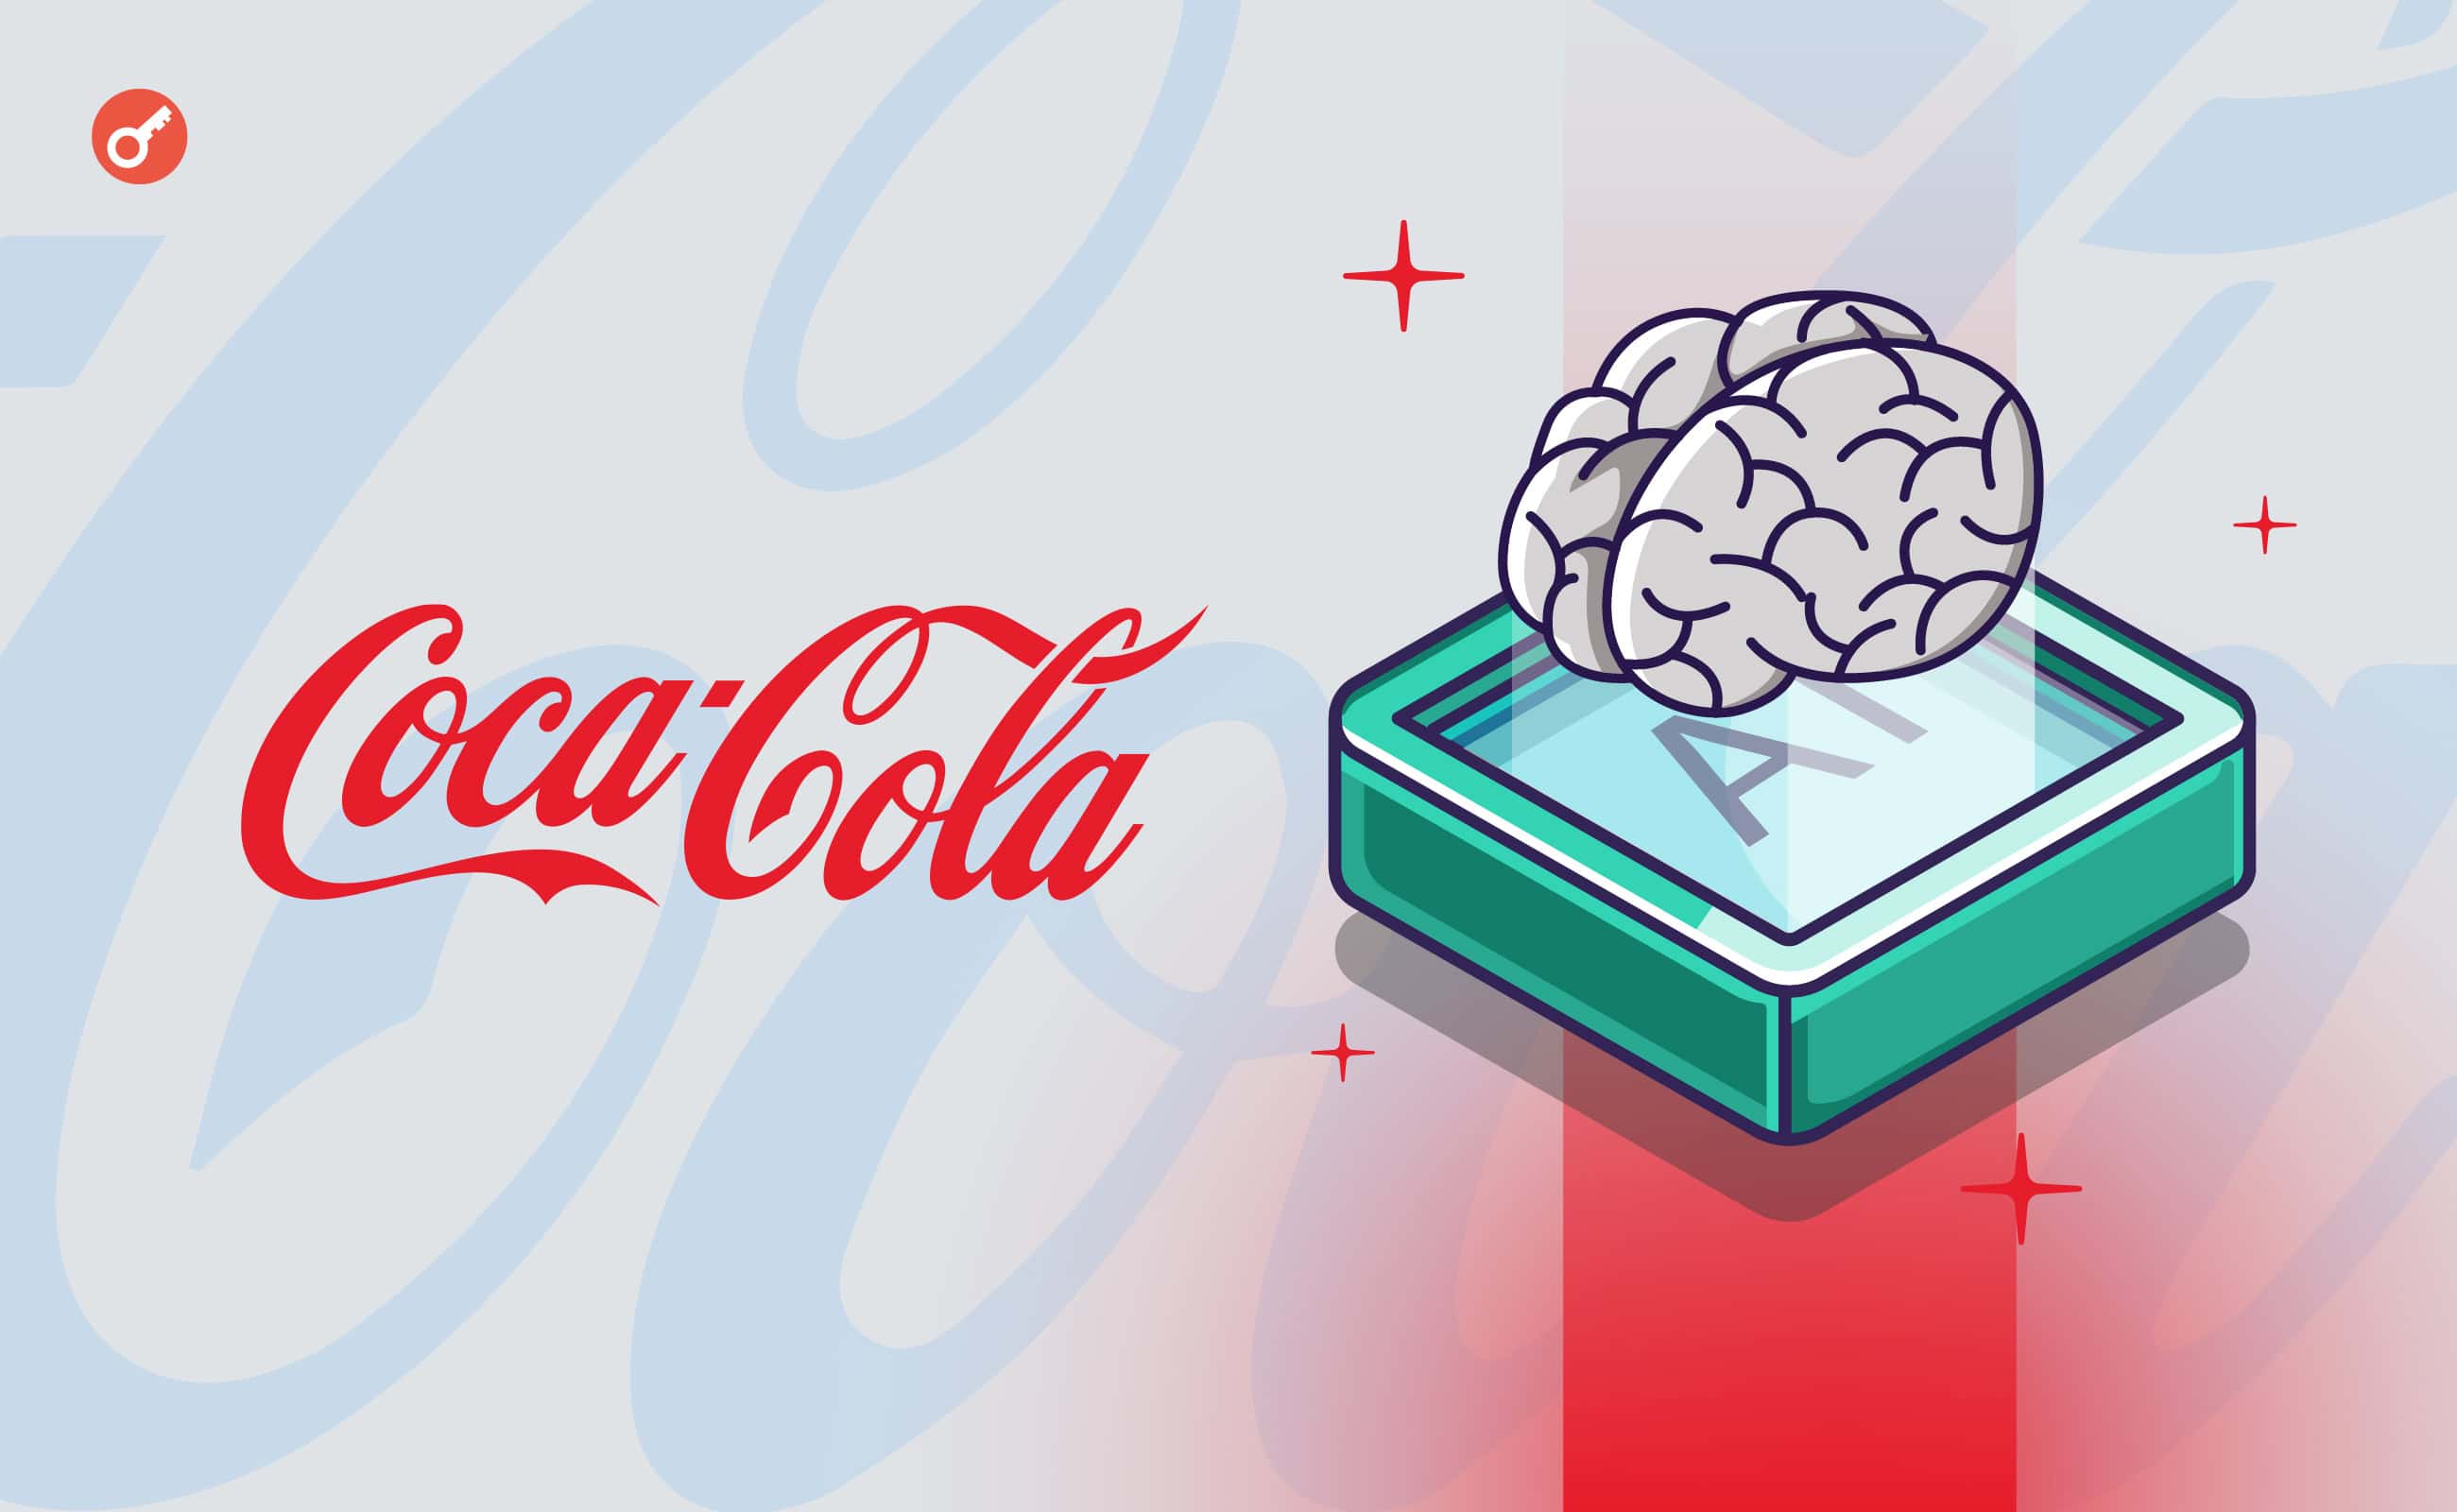 Coca-Cola інвестує $1,1 млрд у ШІ-сферу в рамках співпраці з Microsoft. Головний колаж новини.